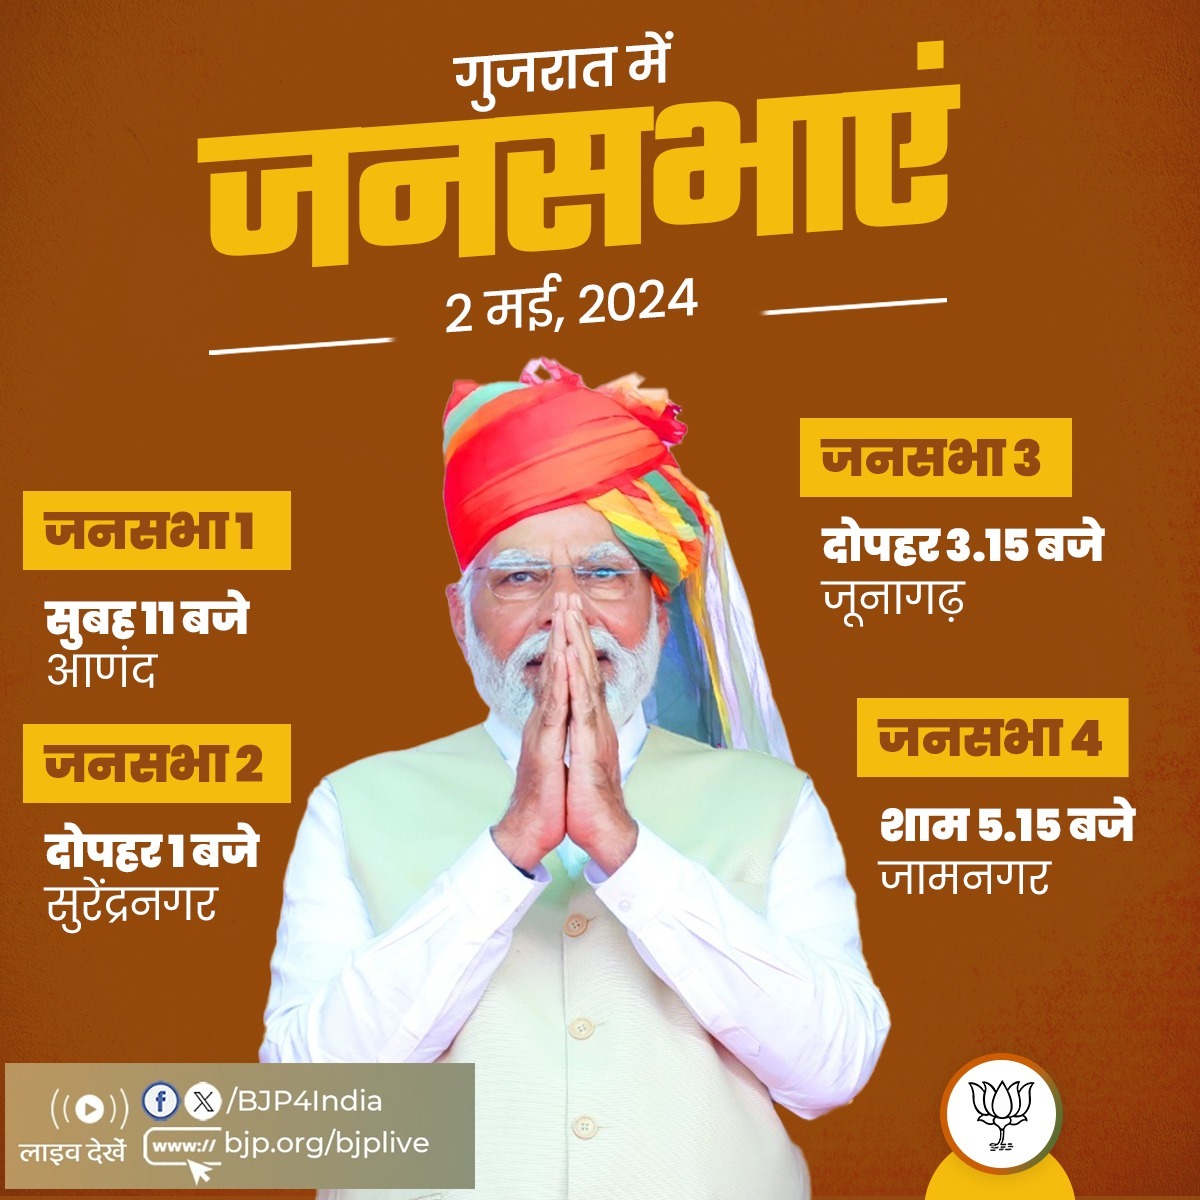 प्रधानमंत्री श्री @narendramodi की 2 मई, 2024 को गुजरात में जनसभाएं। लाइव देखें: 📺twitter.com/BJP4India 📺facebook.com/BJP4India 📺youtube.com/BJP4India 📺bjp.org/bjplive